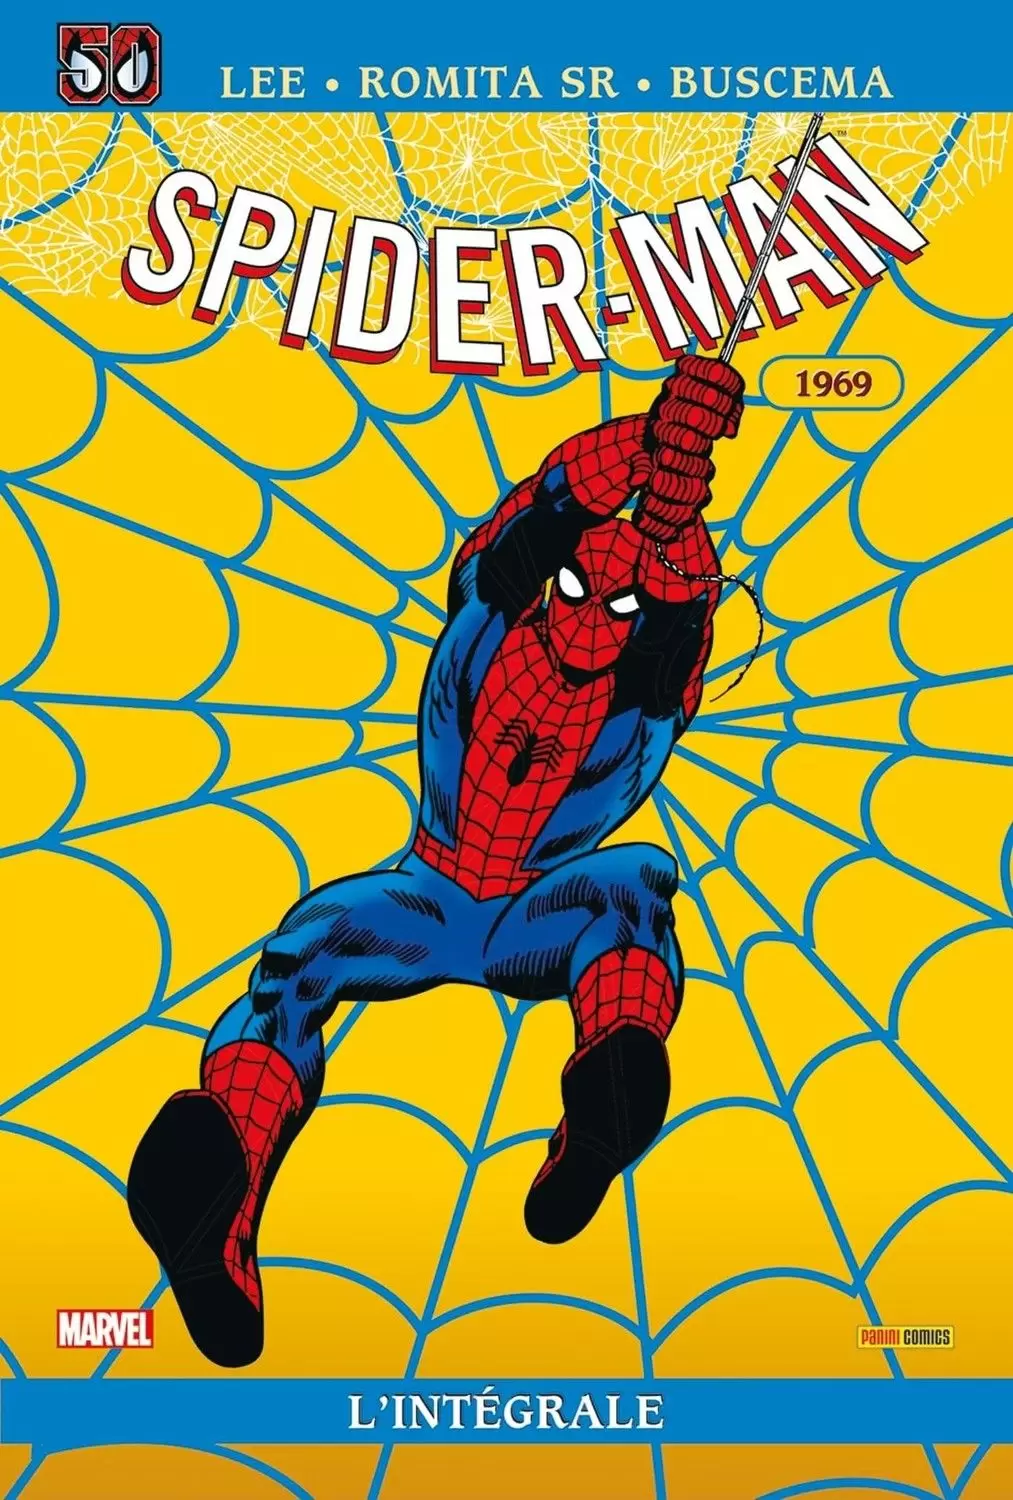 Spider-Man - Spider-Man 1969 - Édition anniversaire 50 ans